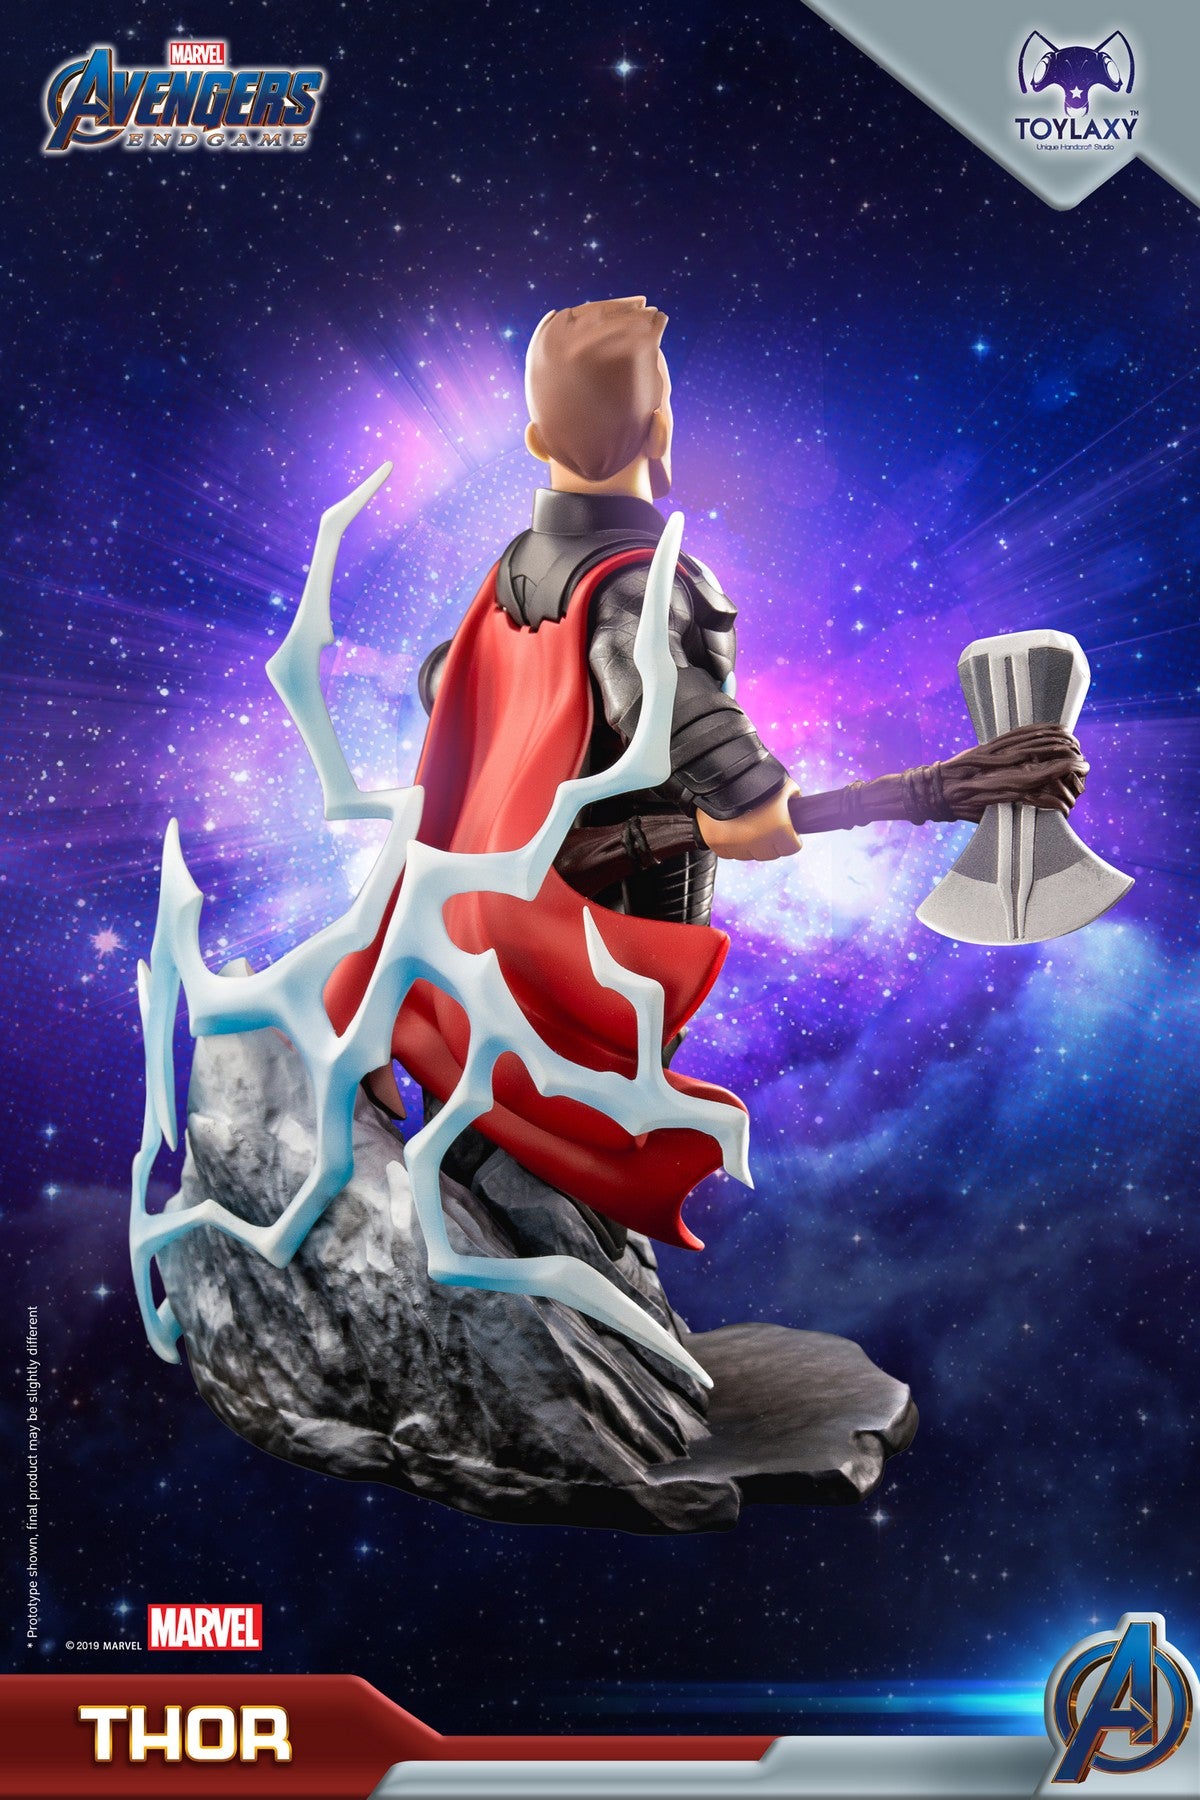 漫威復仇者聯盟：雷神索爾正版模型手辦人偶玩具 Marvel's Avengers: Endgame Premium PVC Thor official figure toy 1 thor doll back